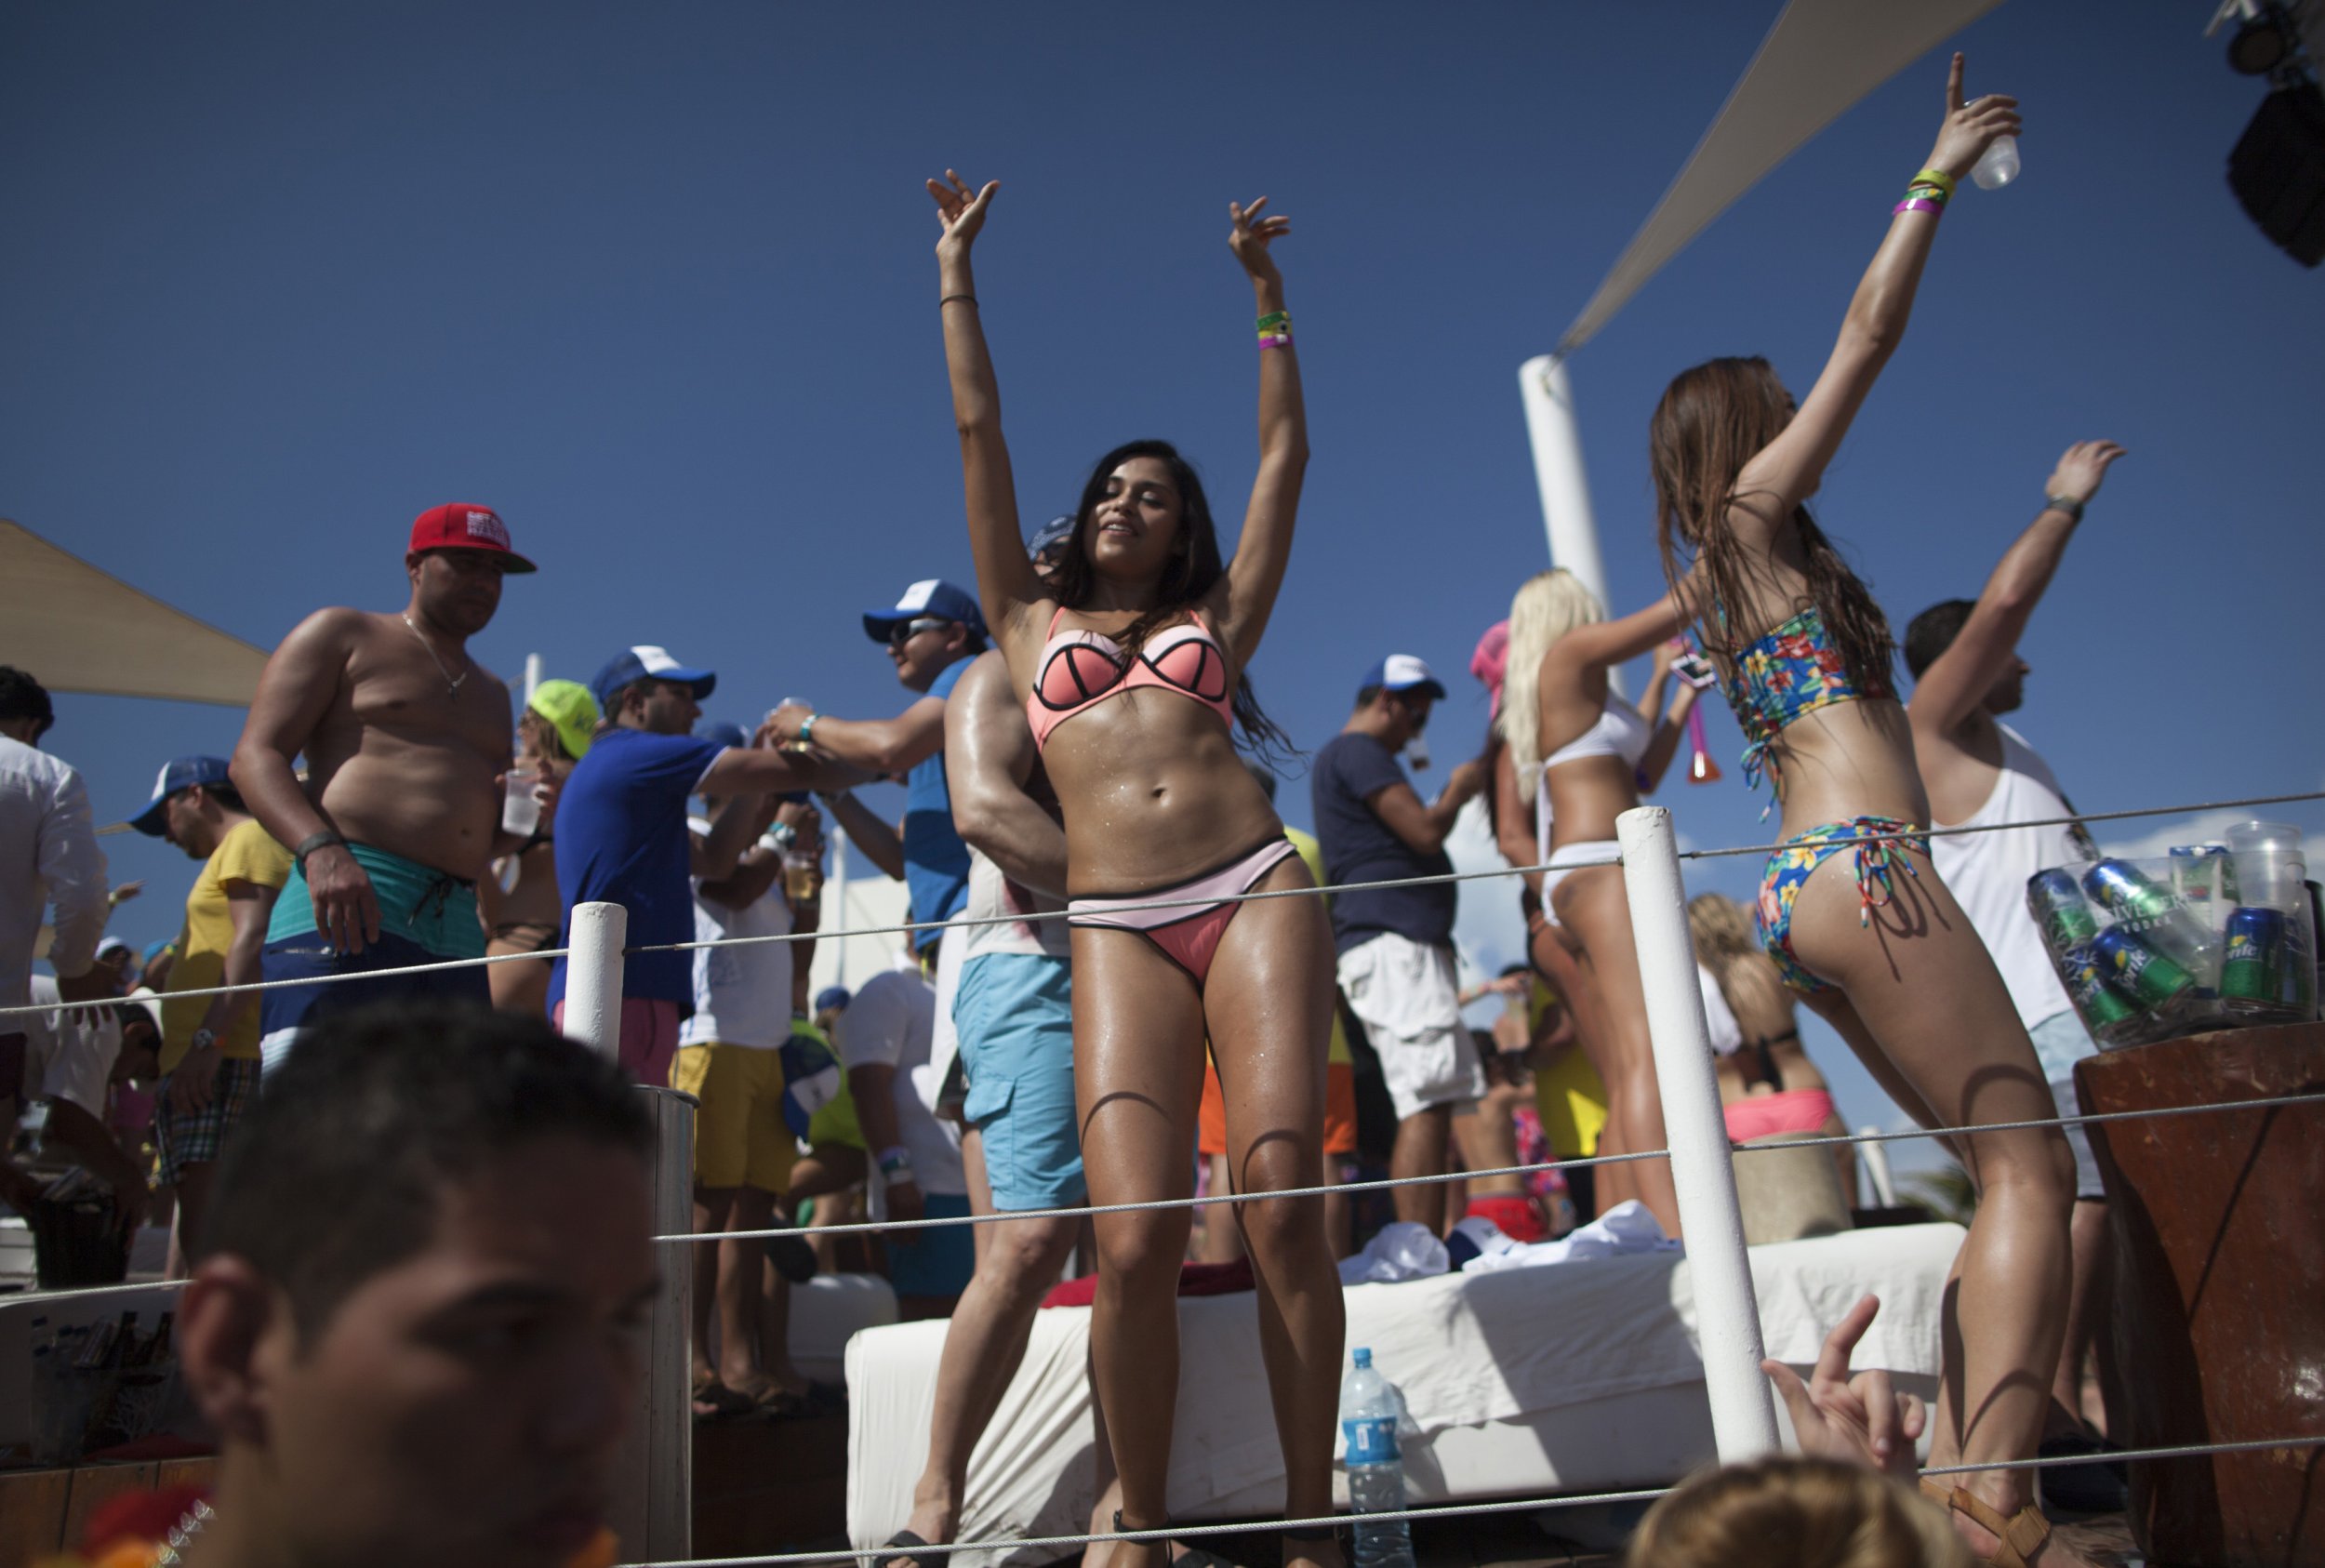 Strippers in cancun